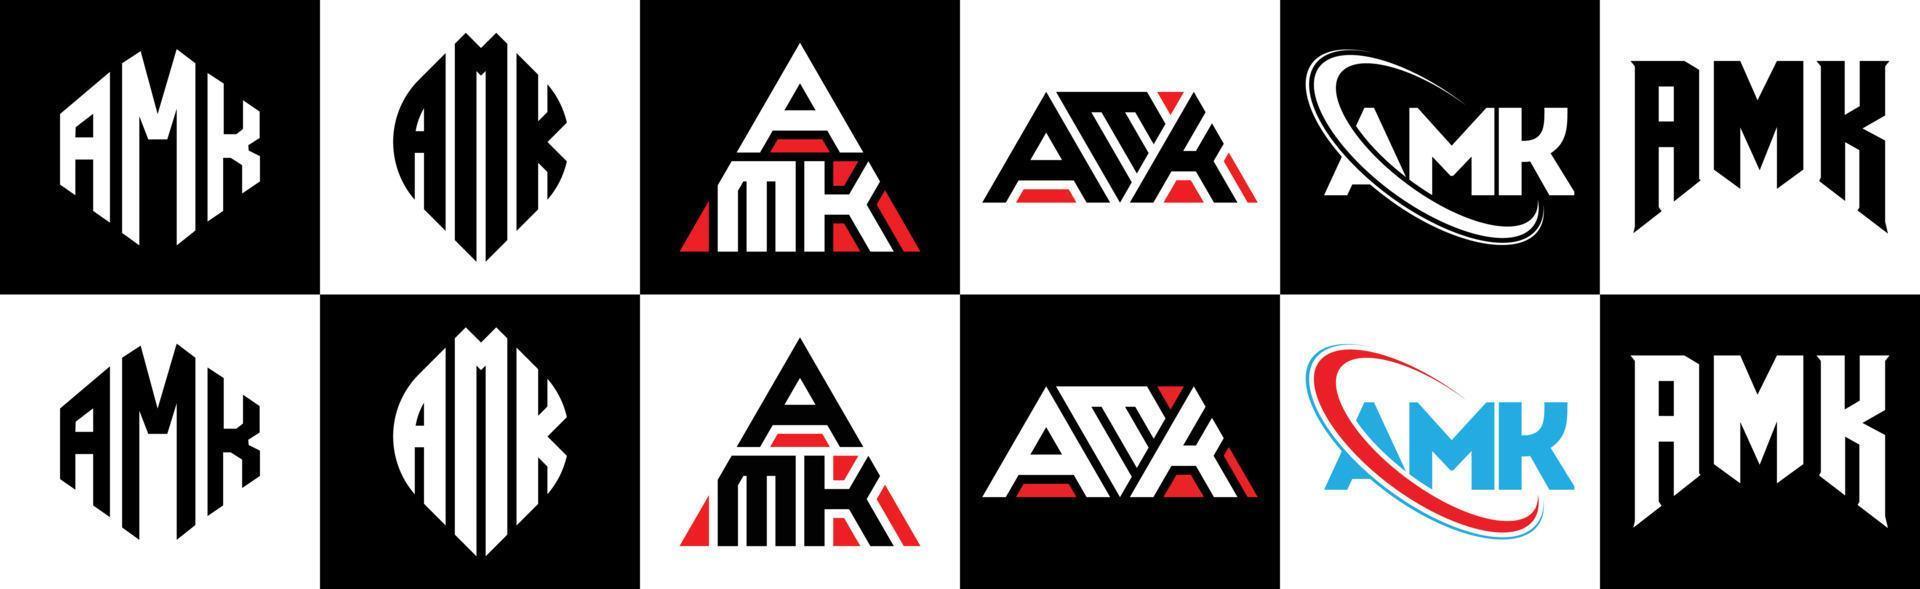 création de logo de lettre amk en six styles. amk polygone, cercle, triangle, hexagone, style plat et simple avec logo de lettre de variation de couleur noir et blanc dans un plan de travail. amk logo minimaliste et classique vecteur